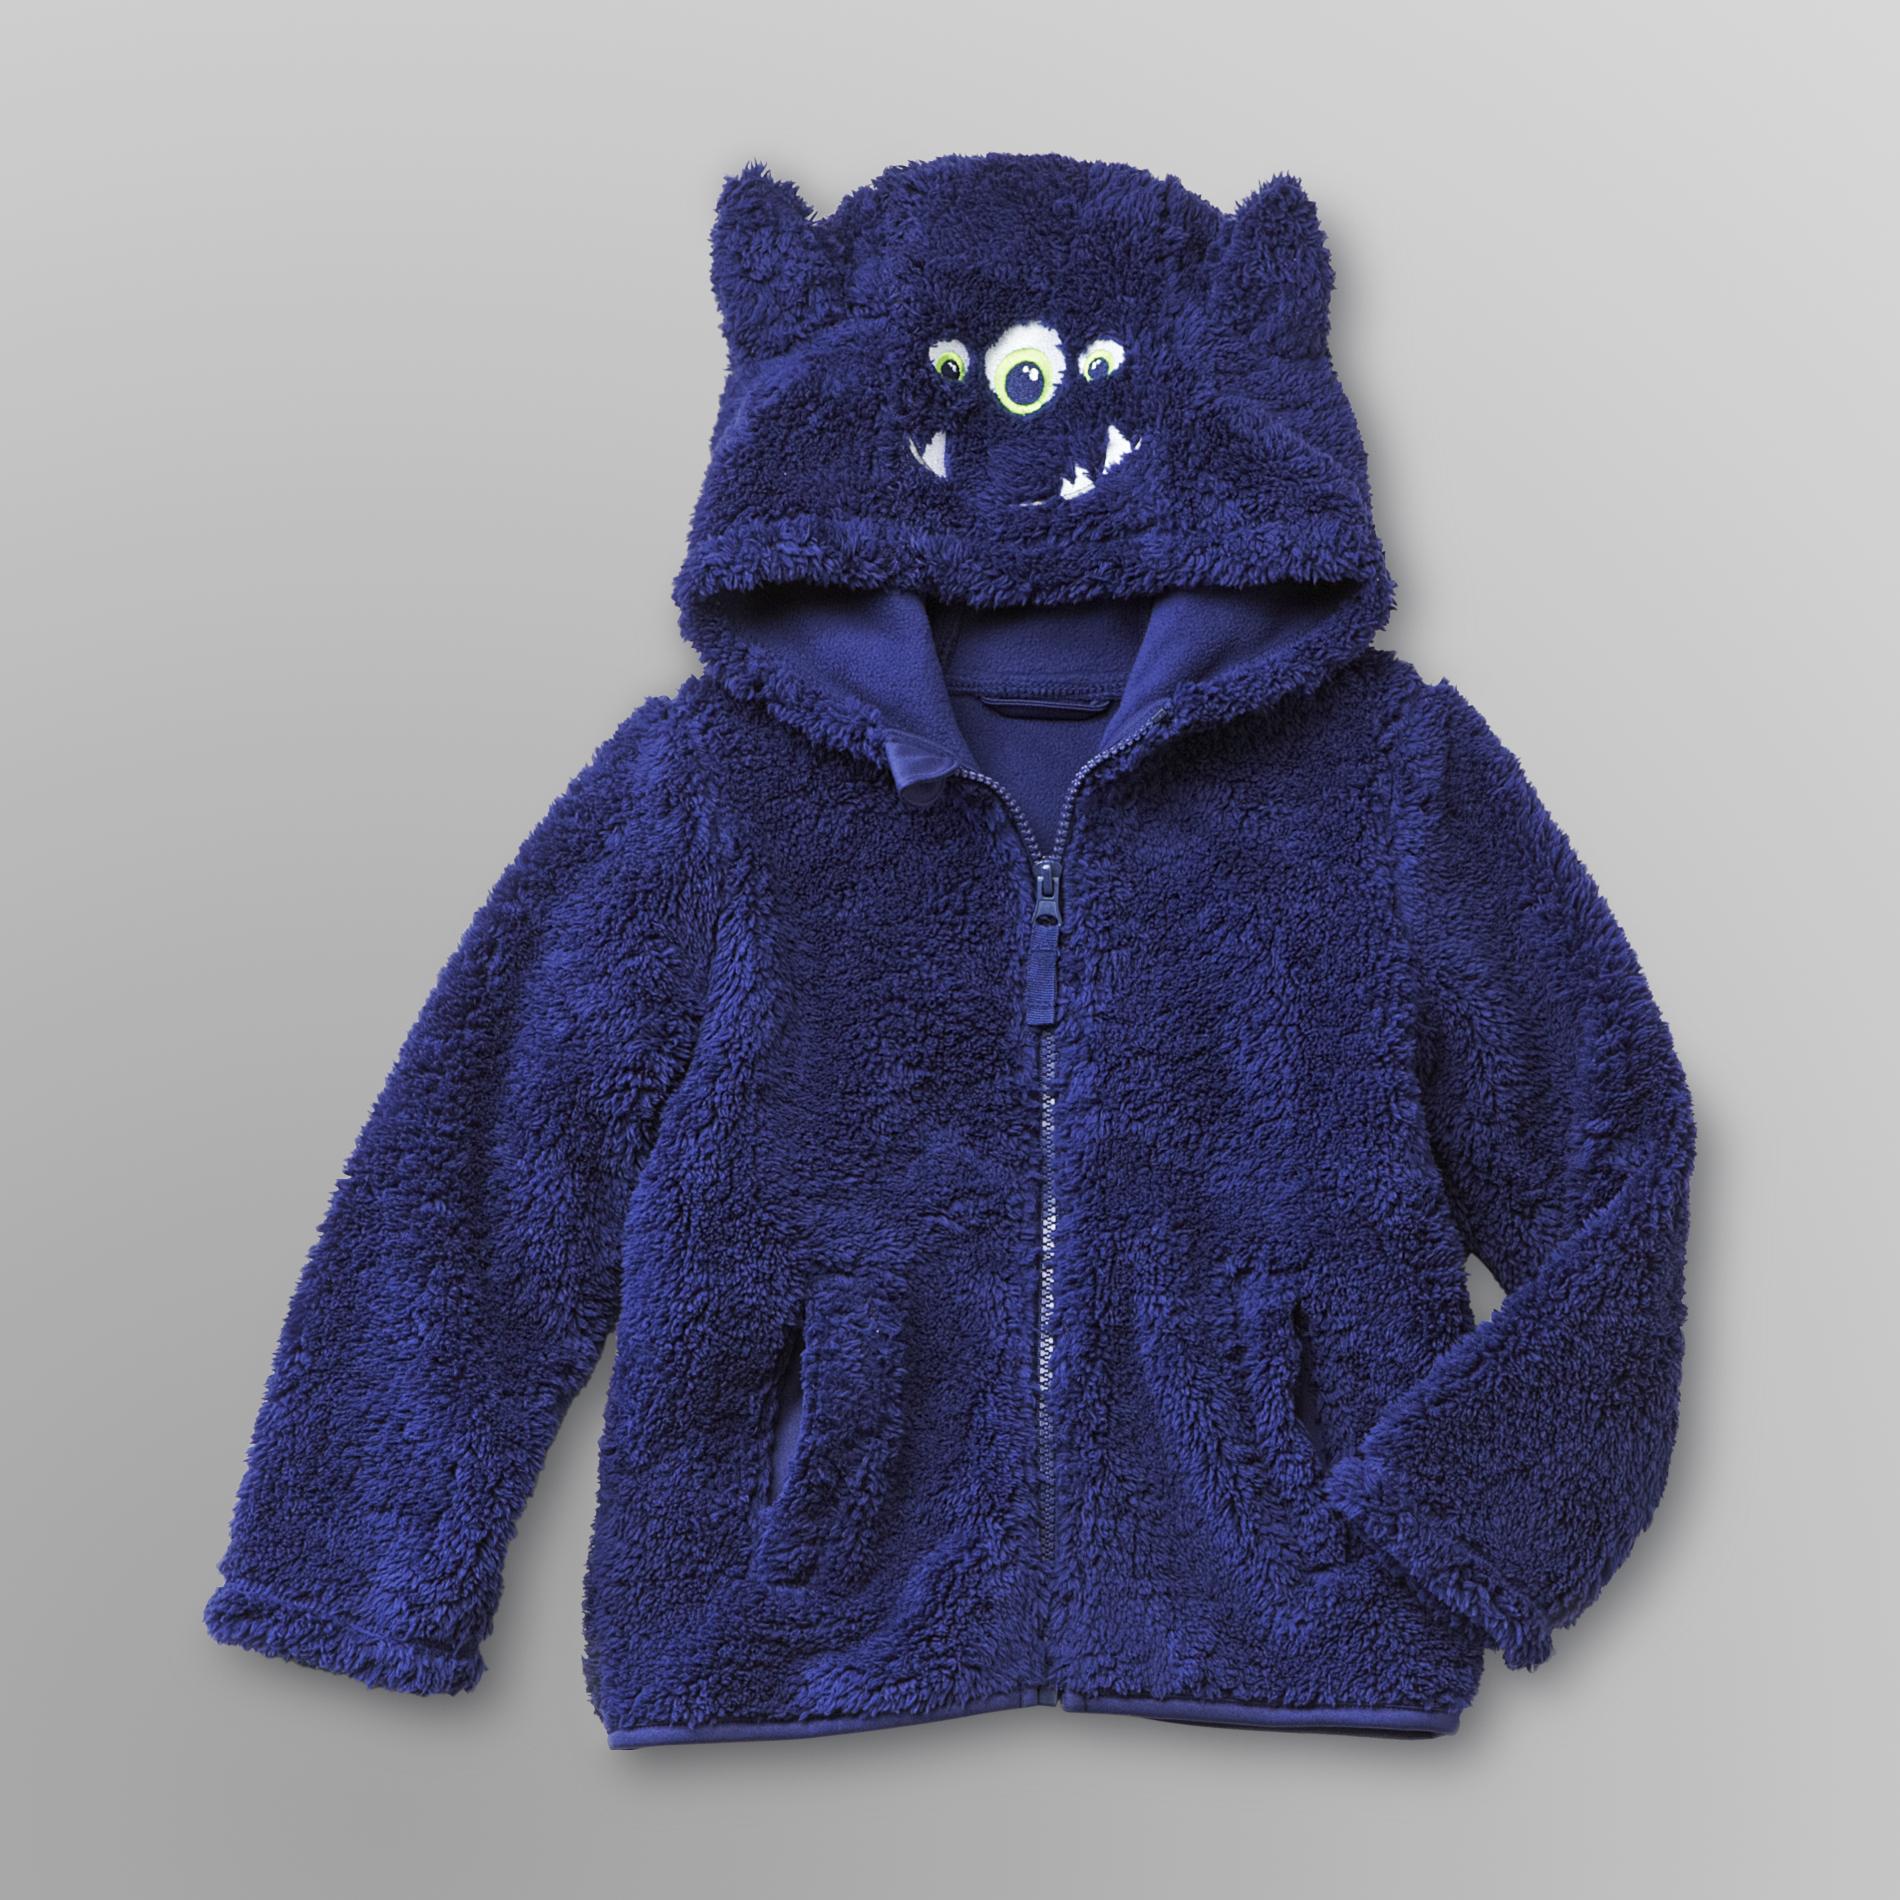 WonderKids Infant & Toddler Boy's Plush Fleece Jacket - Monster